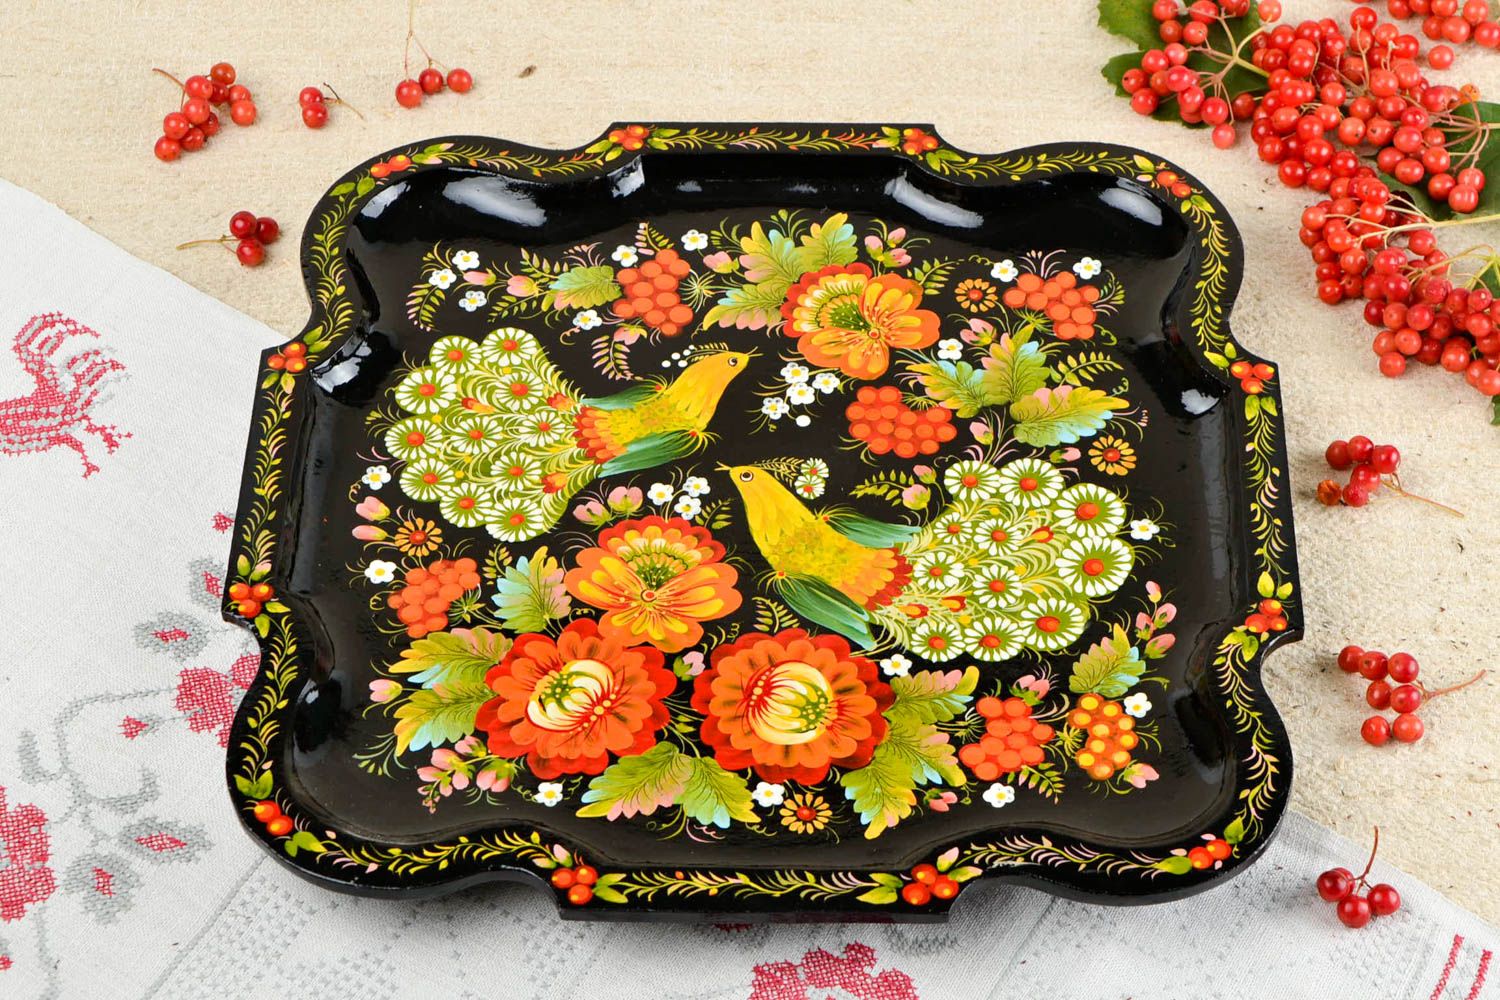 Изделия из дерева хэнд мейд деревянная посуда с росписью деревянная тарелка фото 1